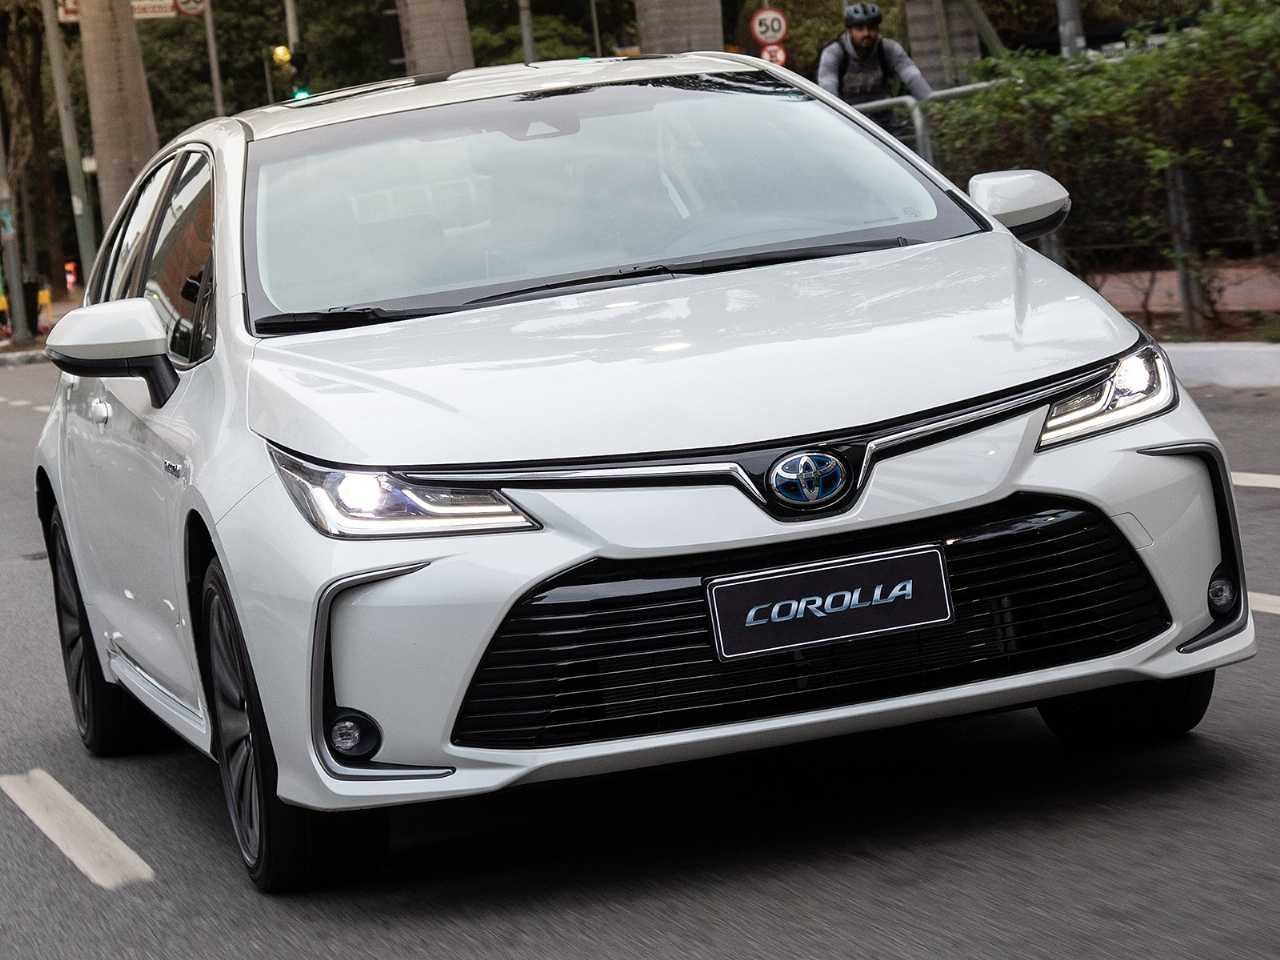 Toyota Corolla usado (geração 11) é completo e mais barato que Yaris